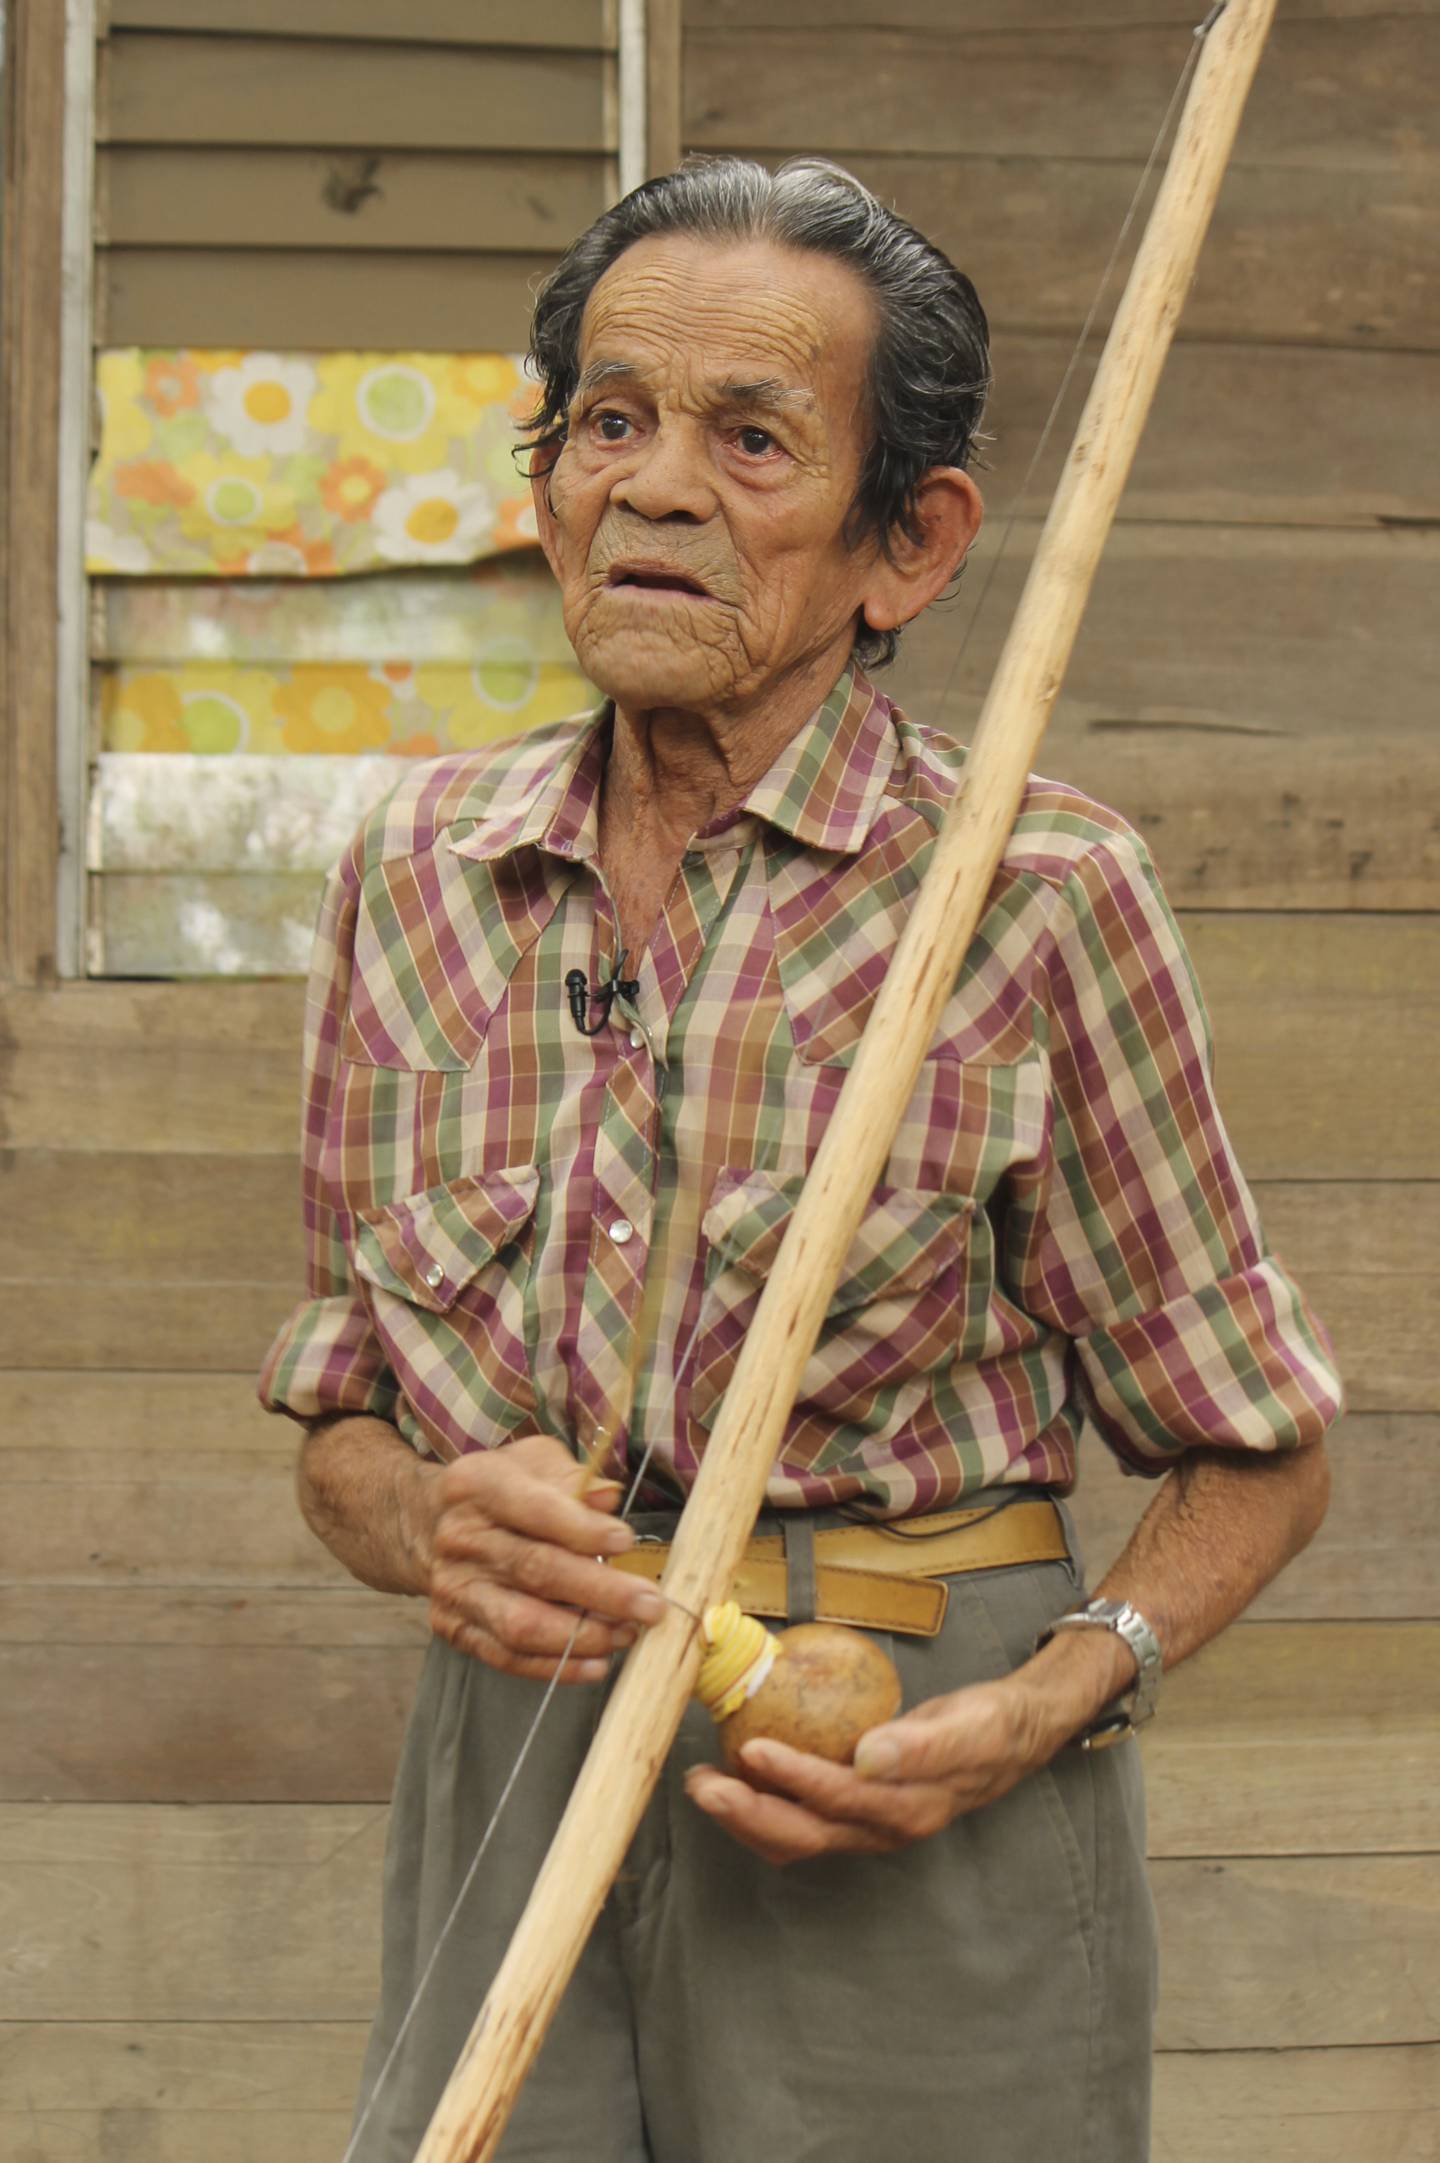 El quijongo guanacasteco goza de buena salud. En la foto don Eulalio Guadamuz, quijonguero de Bagaces.